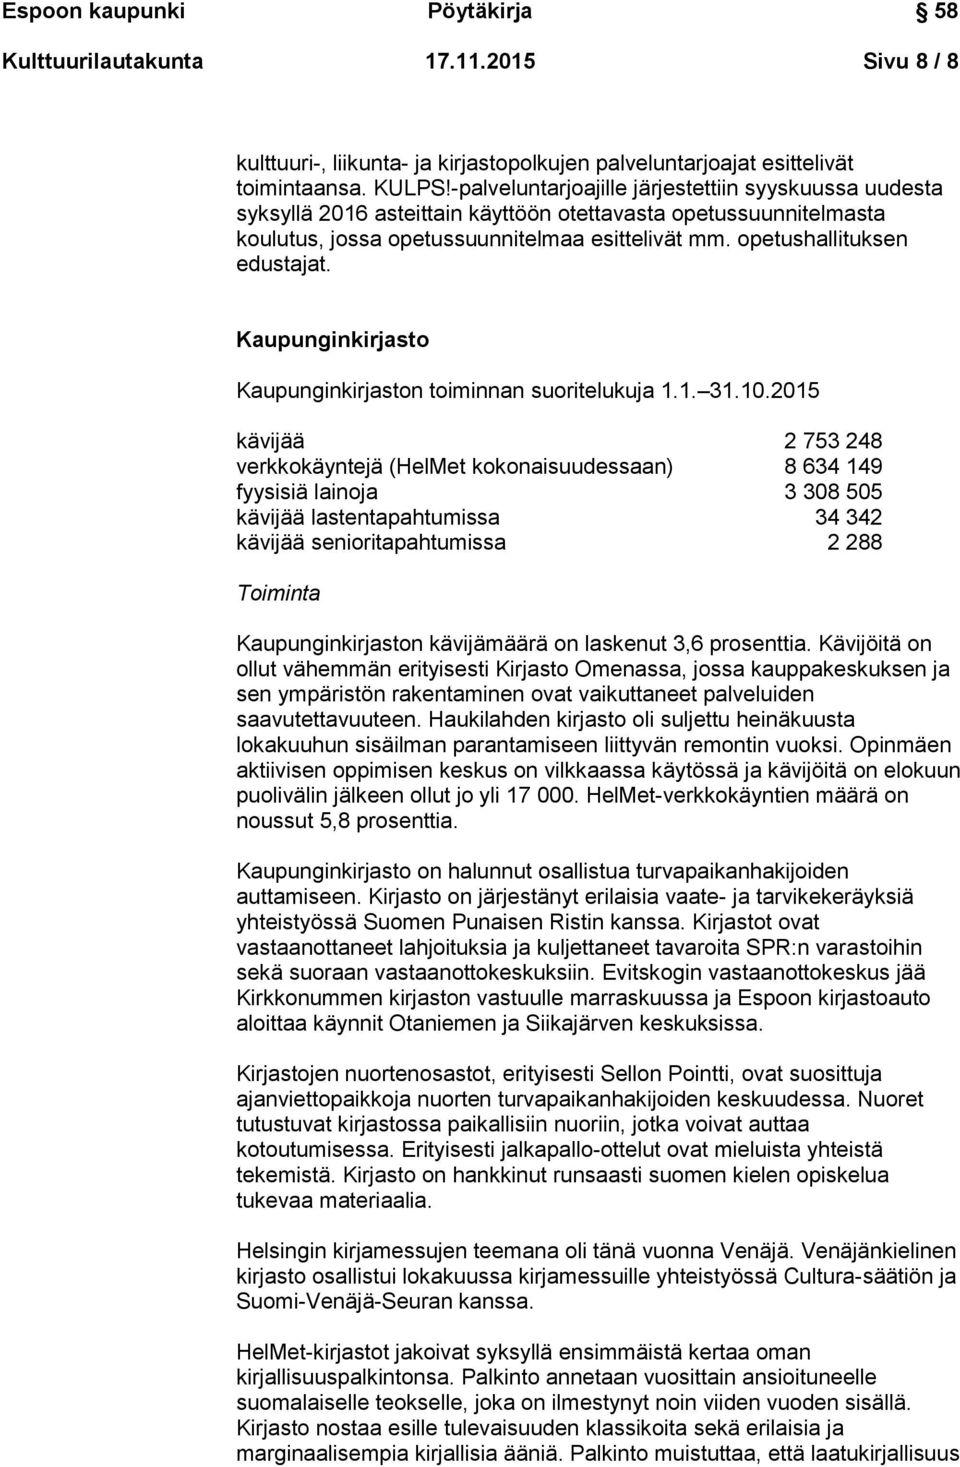 Kaupunginkirjasto Kaupunginkirjaston toiminnan suoritelukuja 1.1. 31.10.